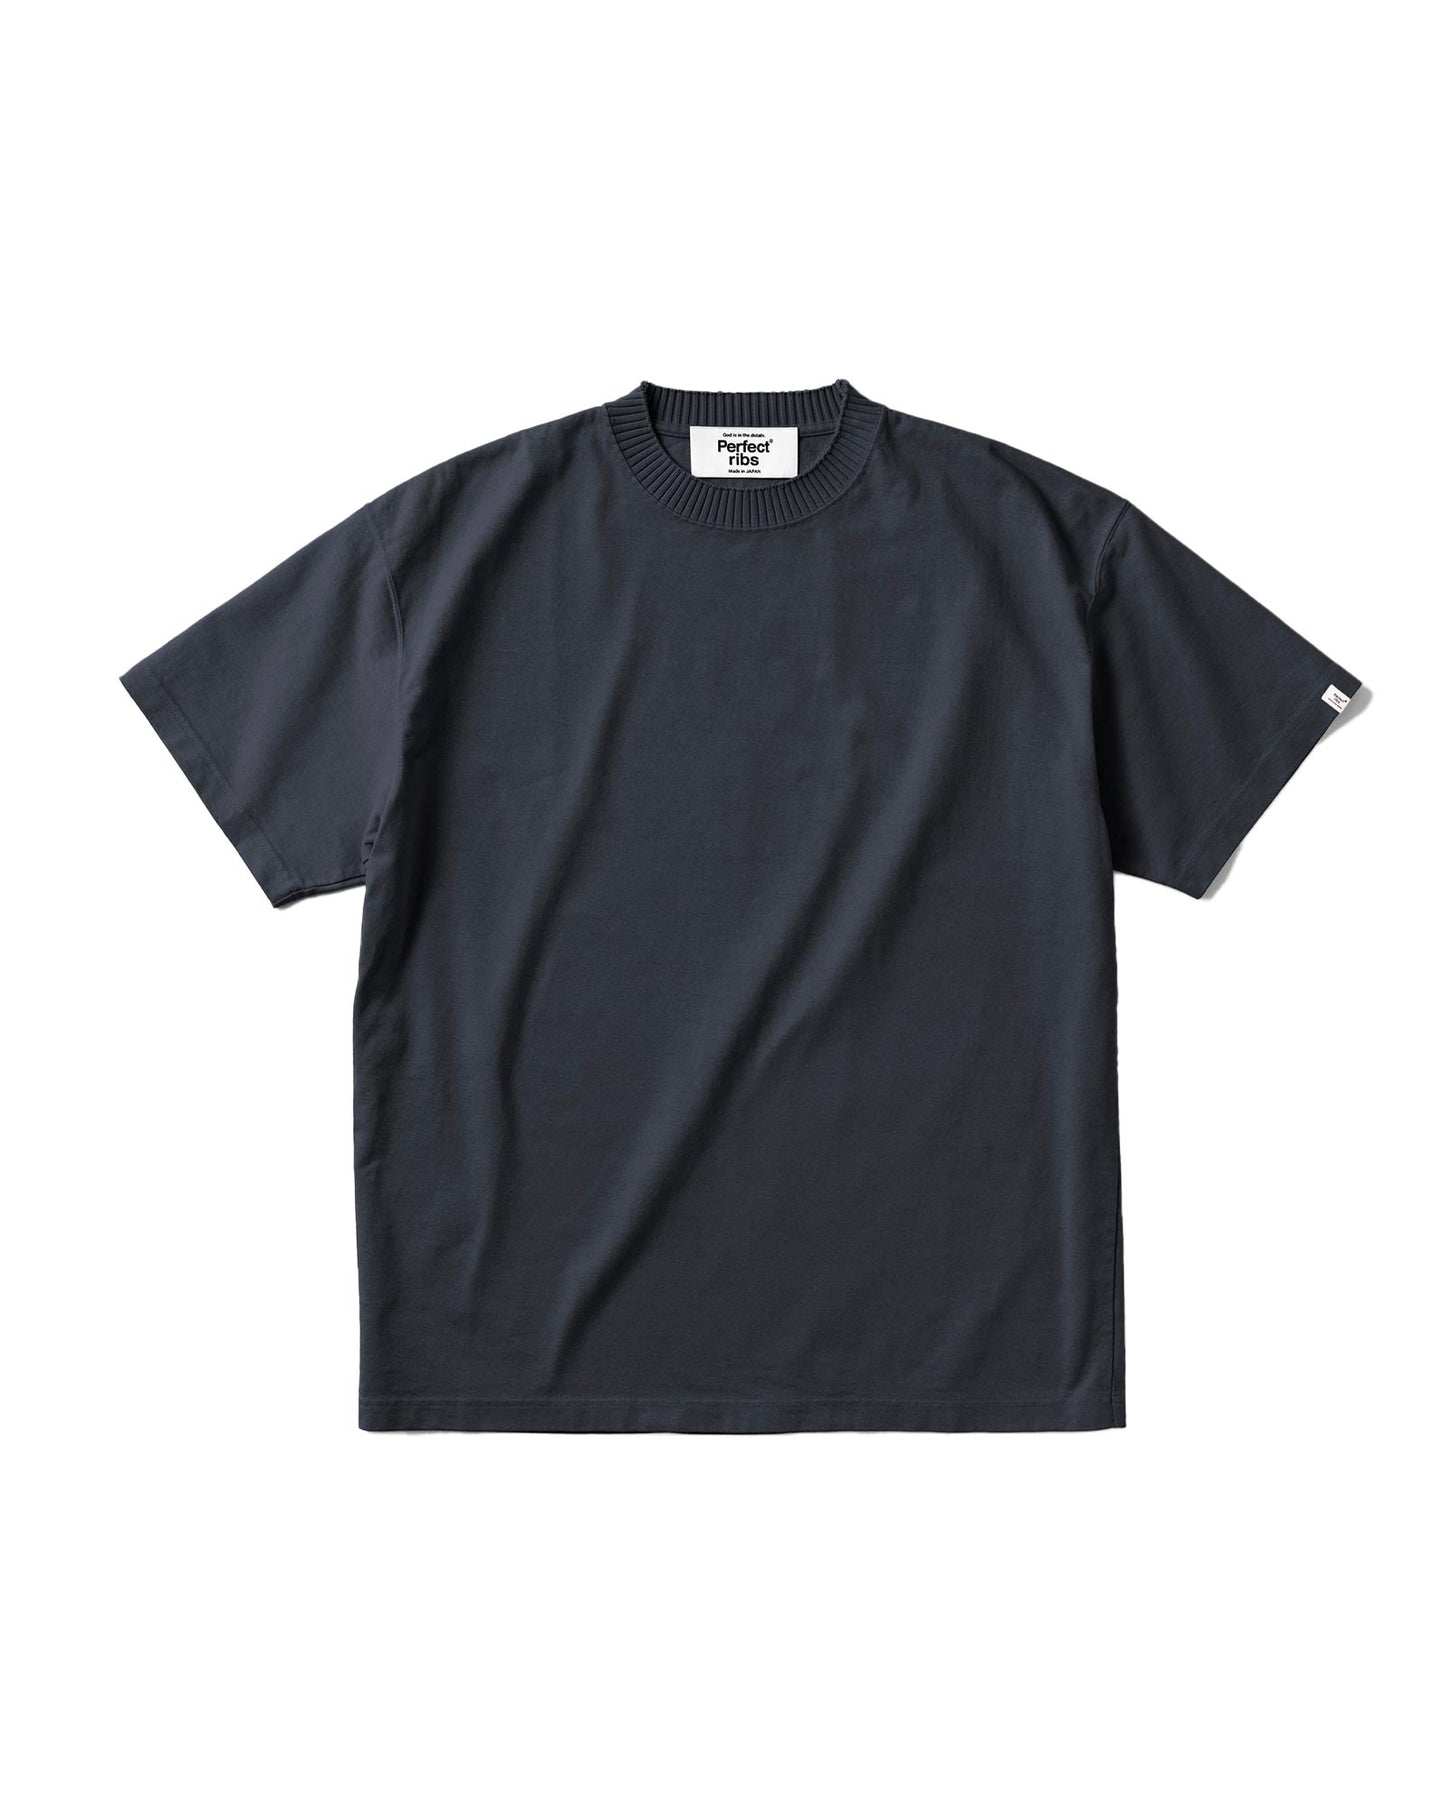 パーフェクトリブス/Basic Short Sleeve T Shirts/Tシャツ/Black